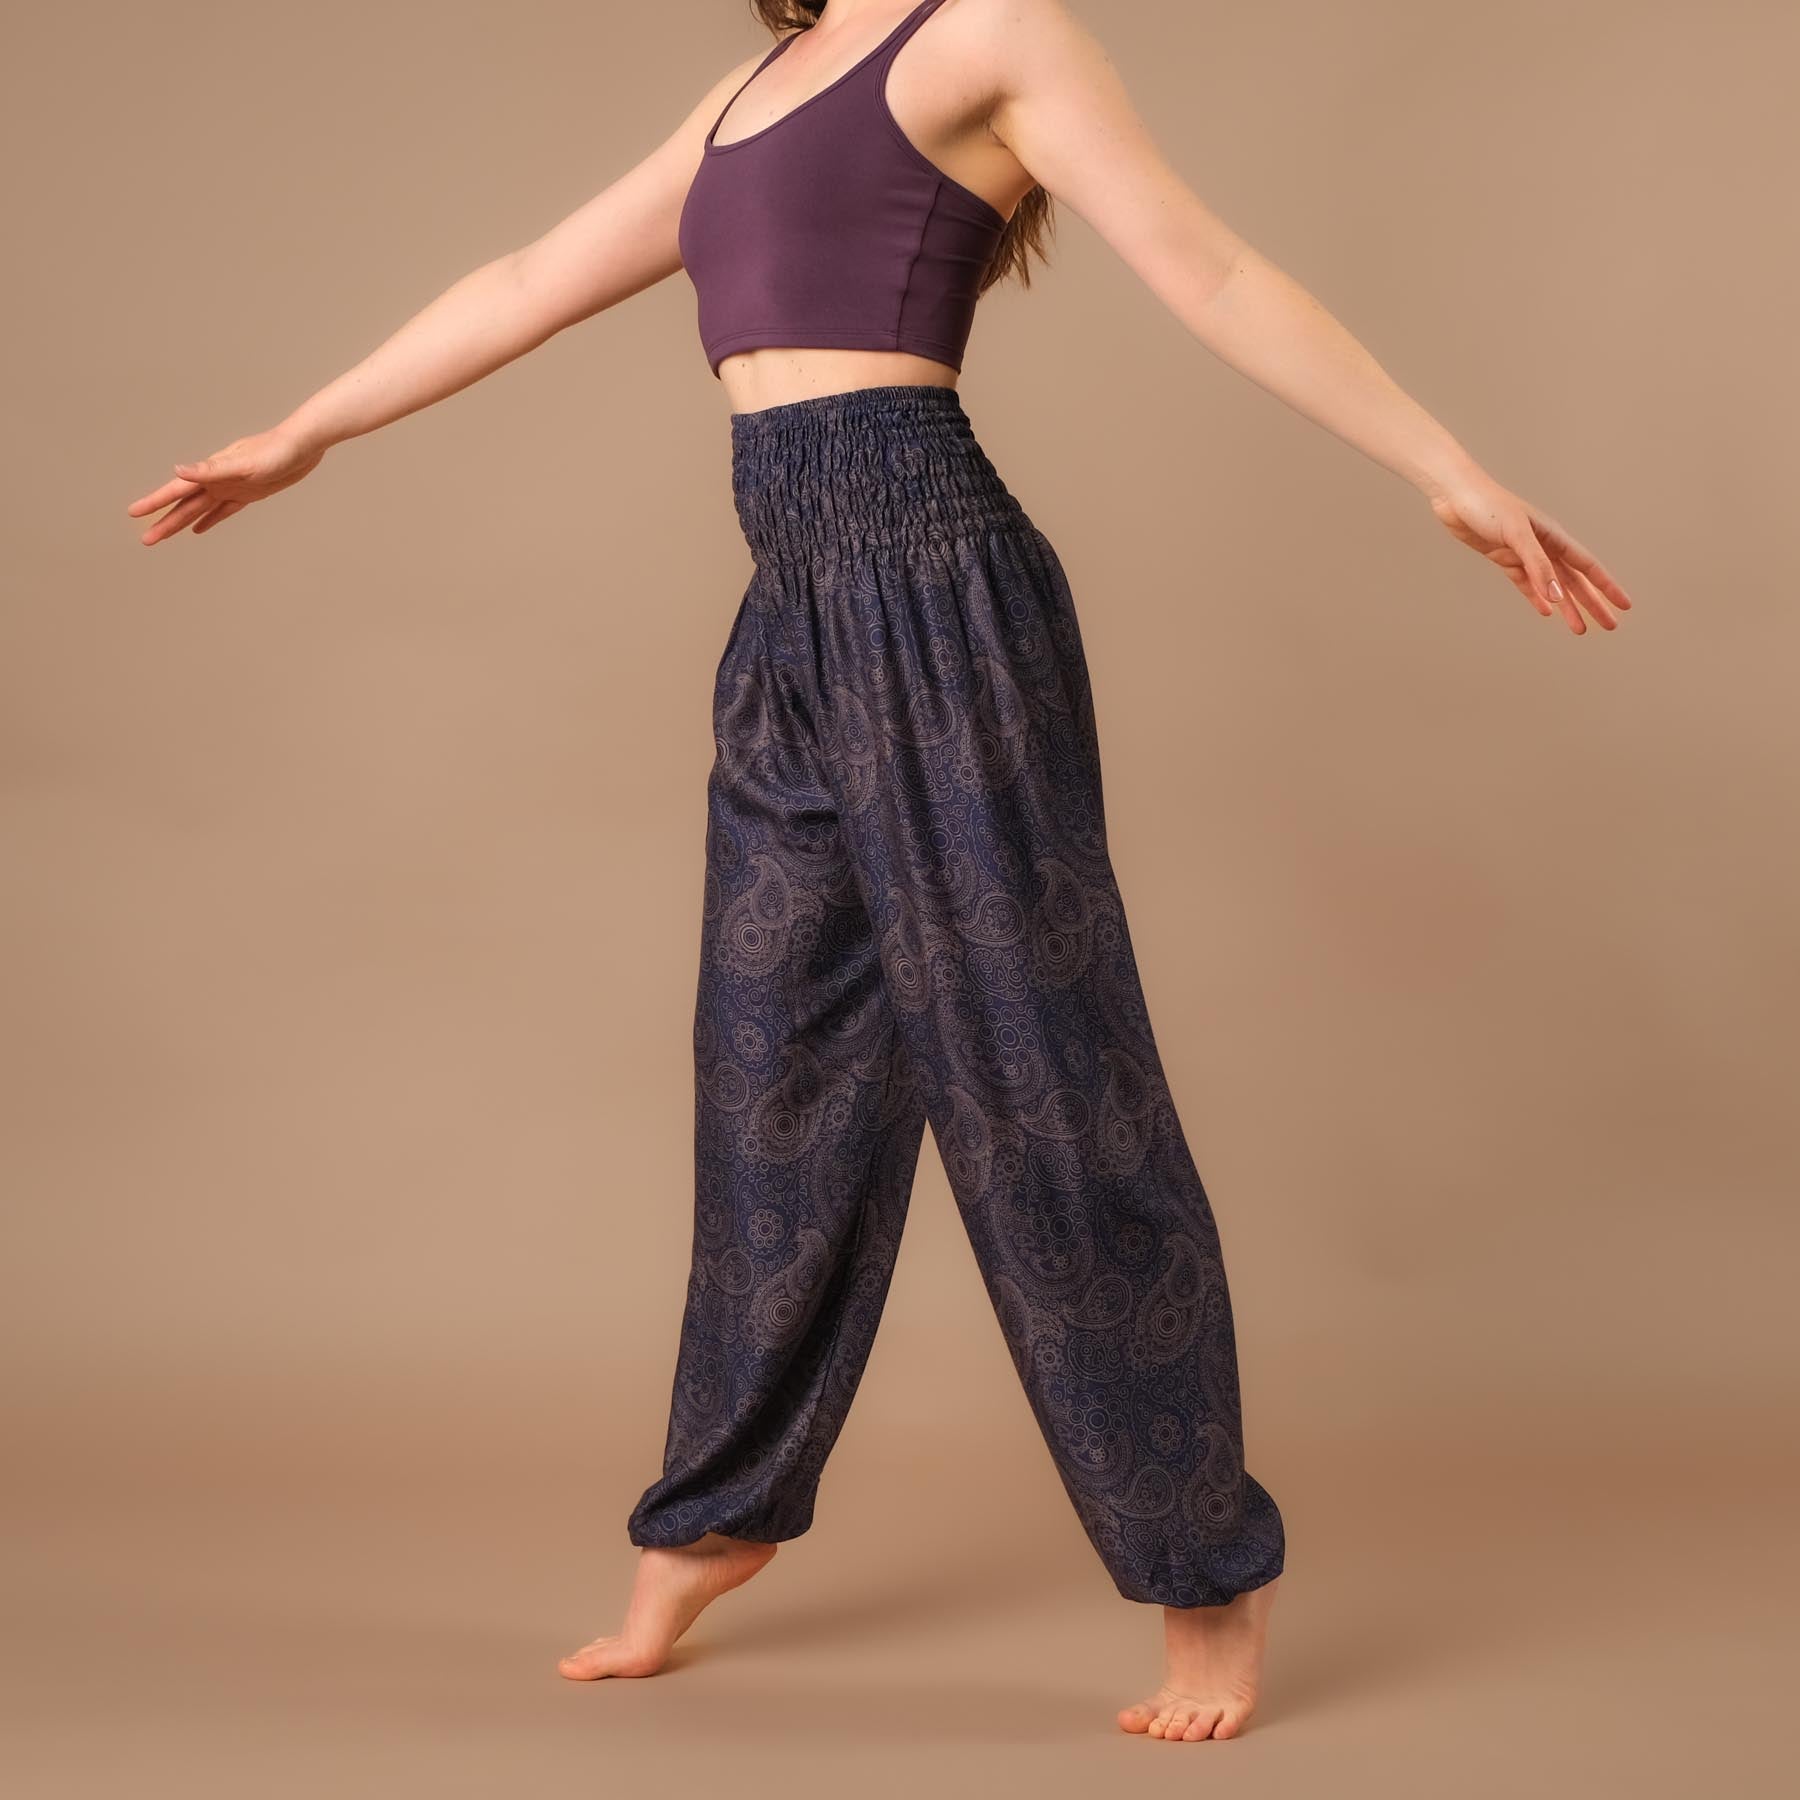 Pantaloni harem yoga YingYang indaco